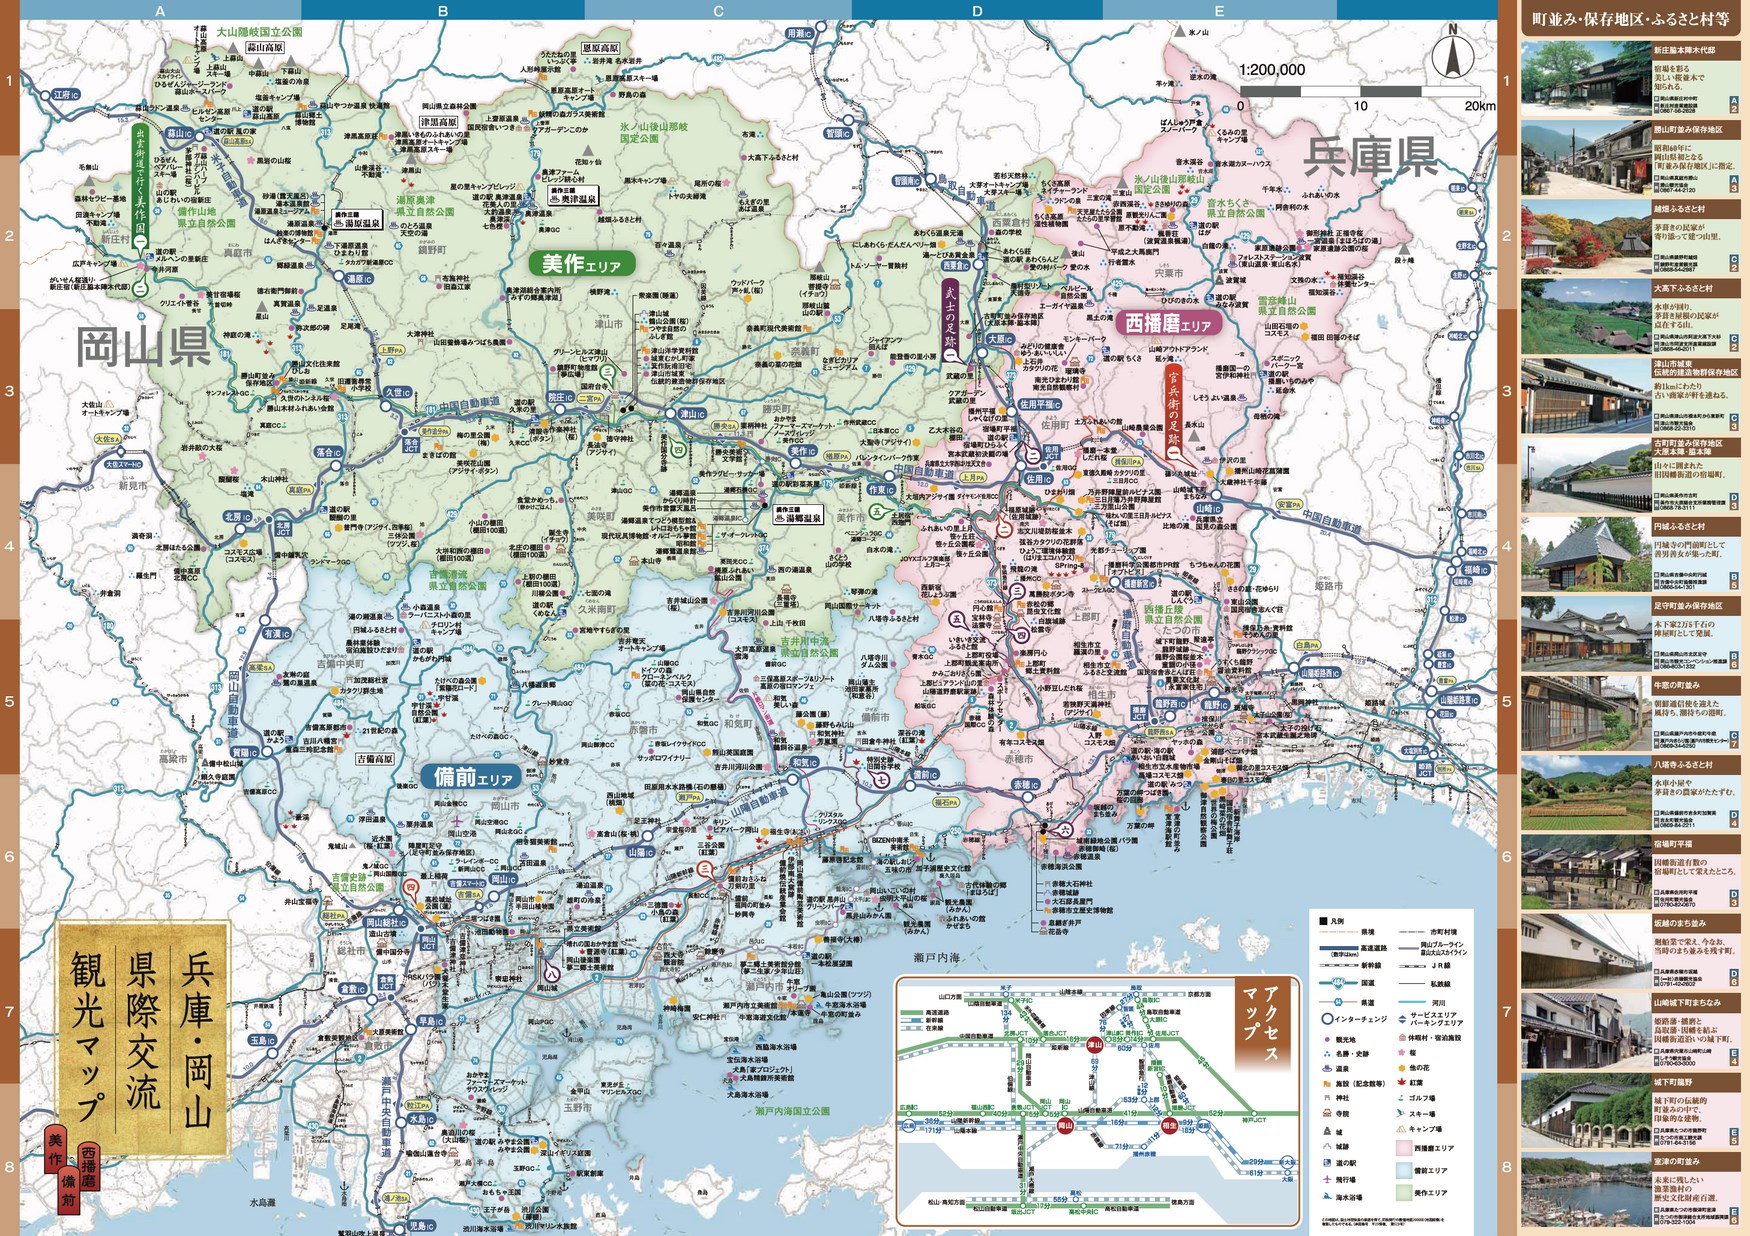 兵庫 岡山県際交流観光マップ 地図 オカヤマイーブックス Okayama Ebooks